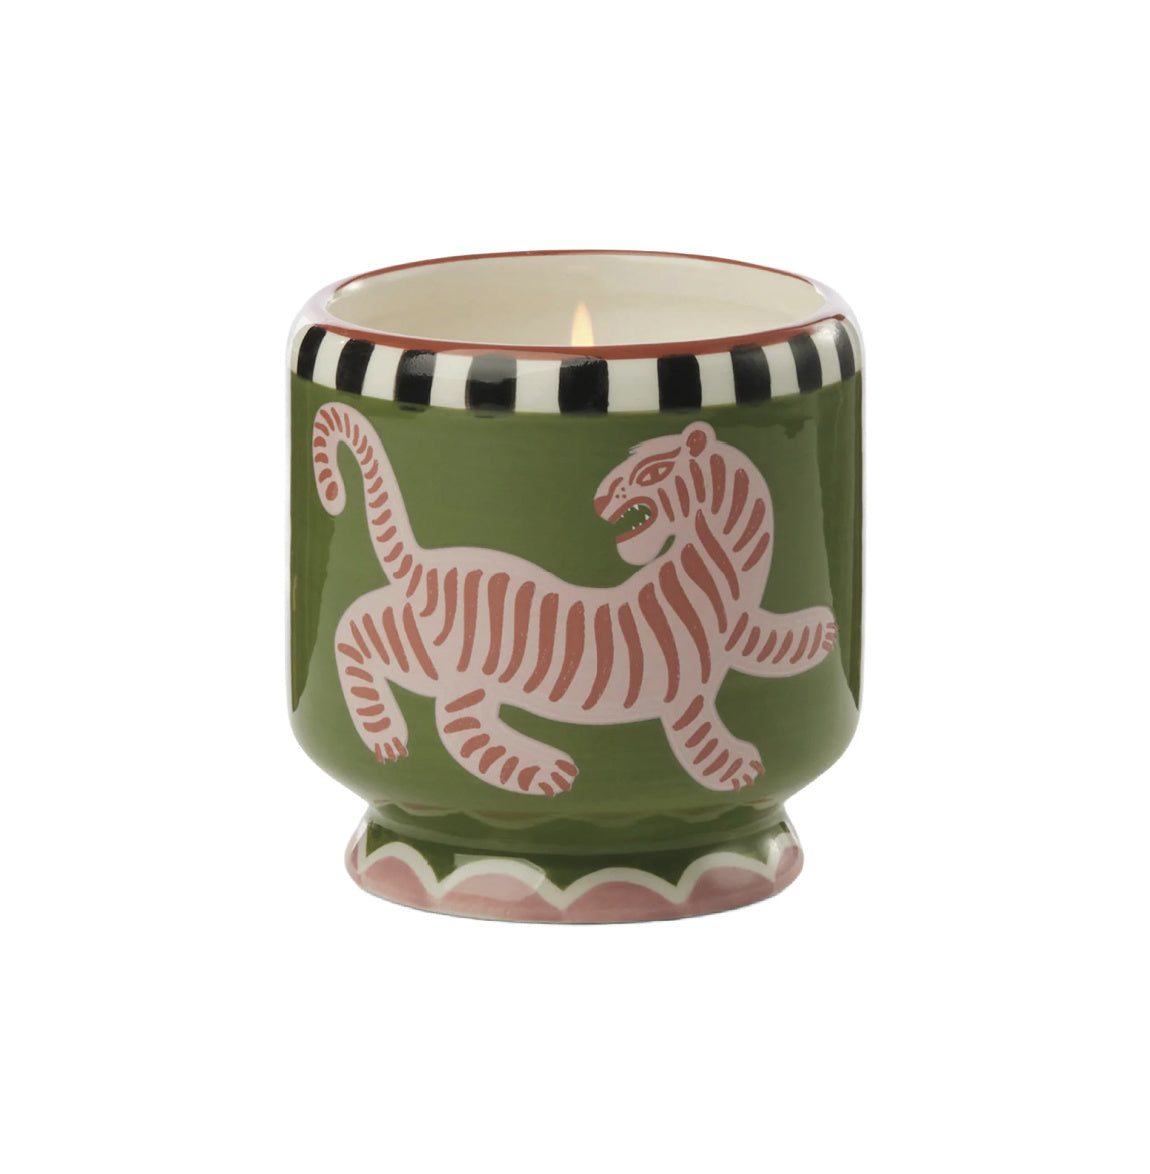 Adopo Handpainted Tiger Ceramic Candle 8oz.